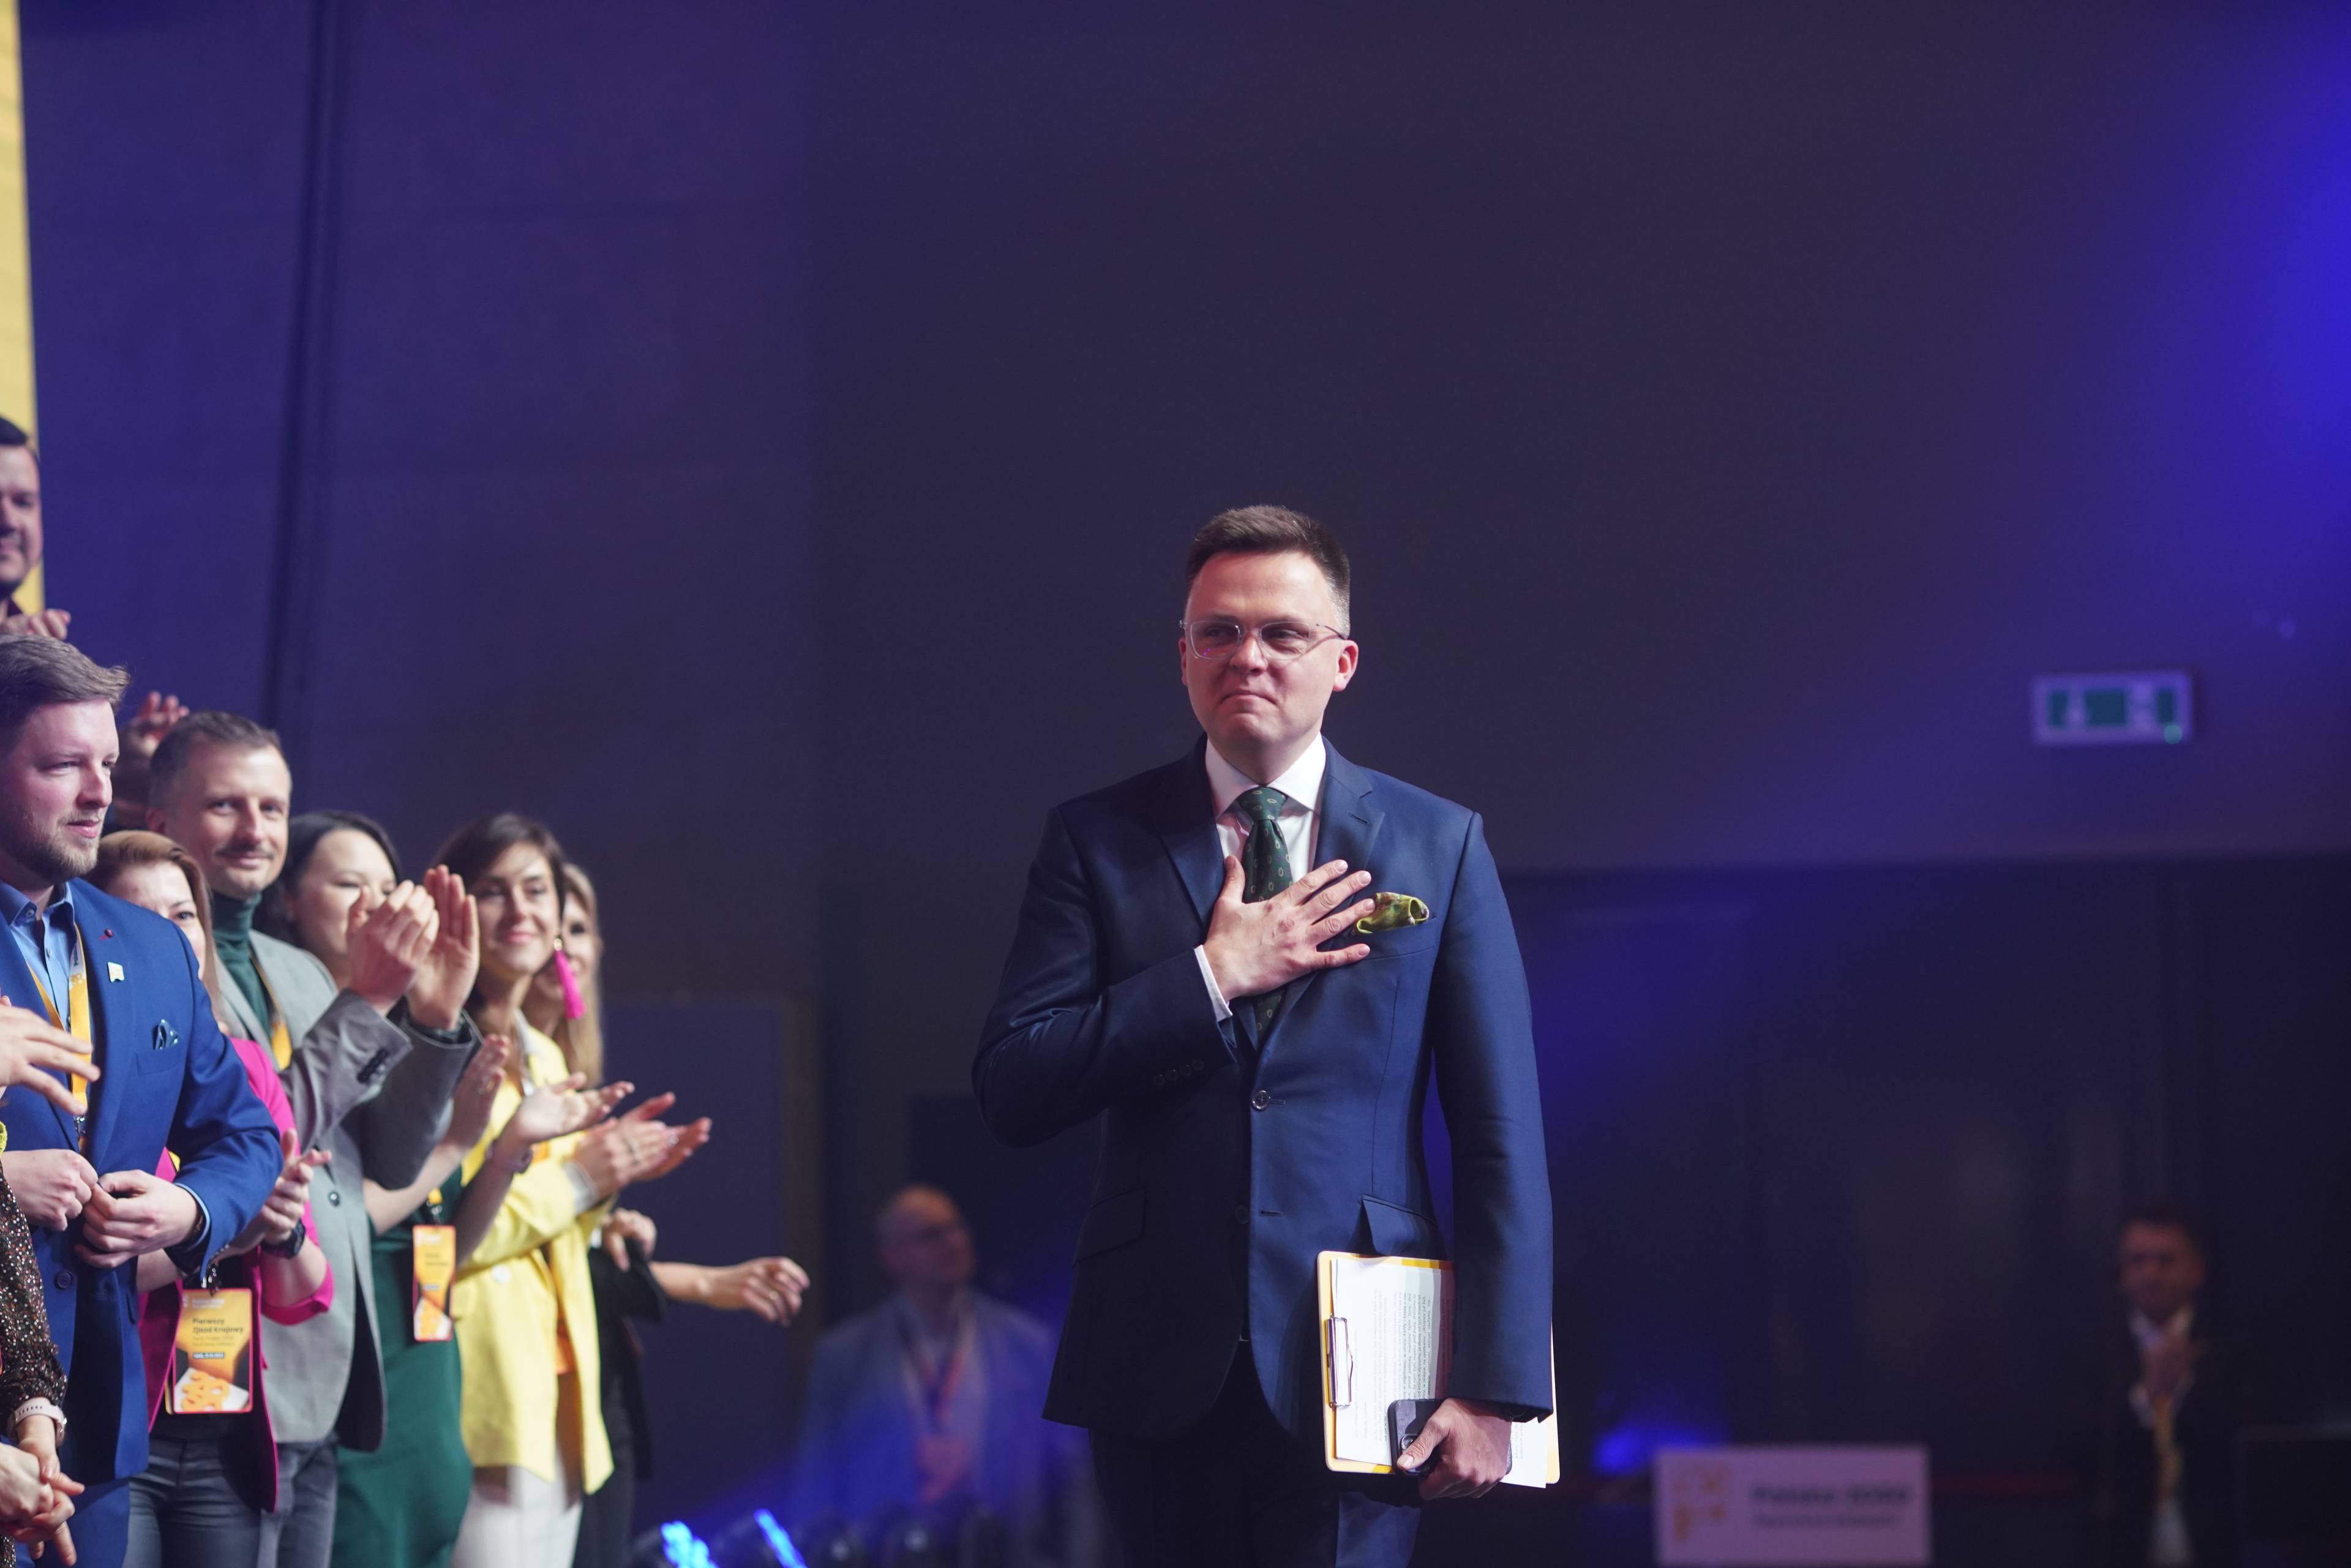 Szymon Hołownia, pierwszy zjazd partii Polska 2050, 21 stycznia 2023